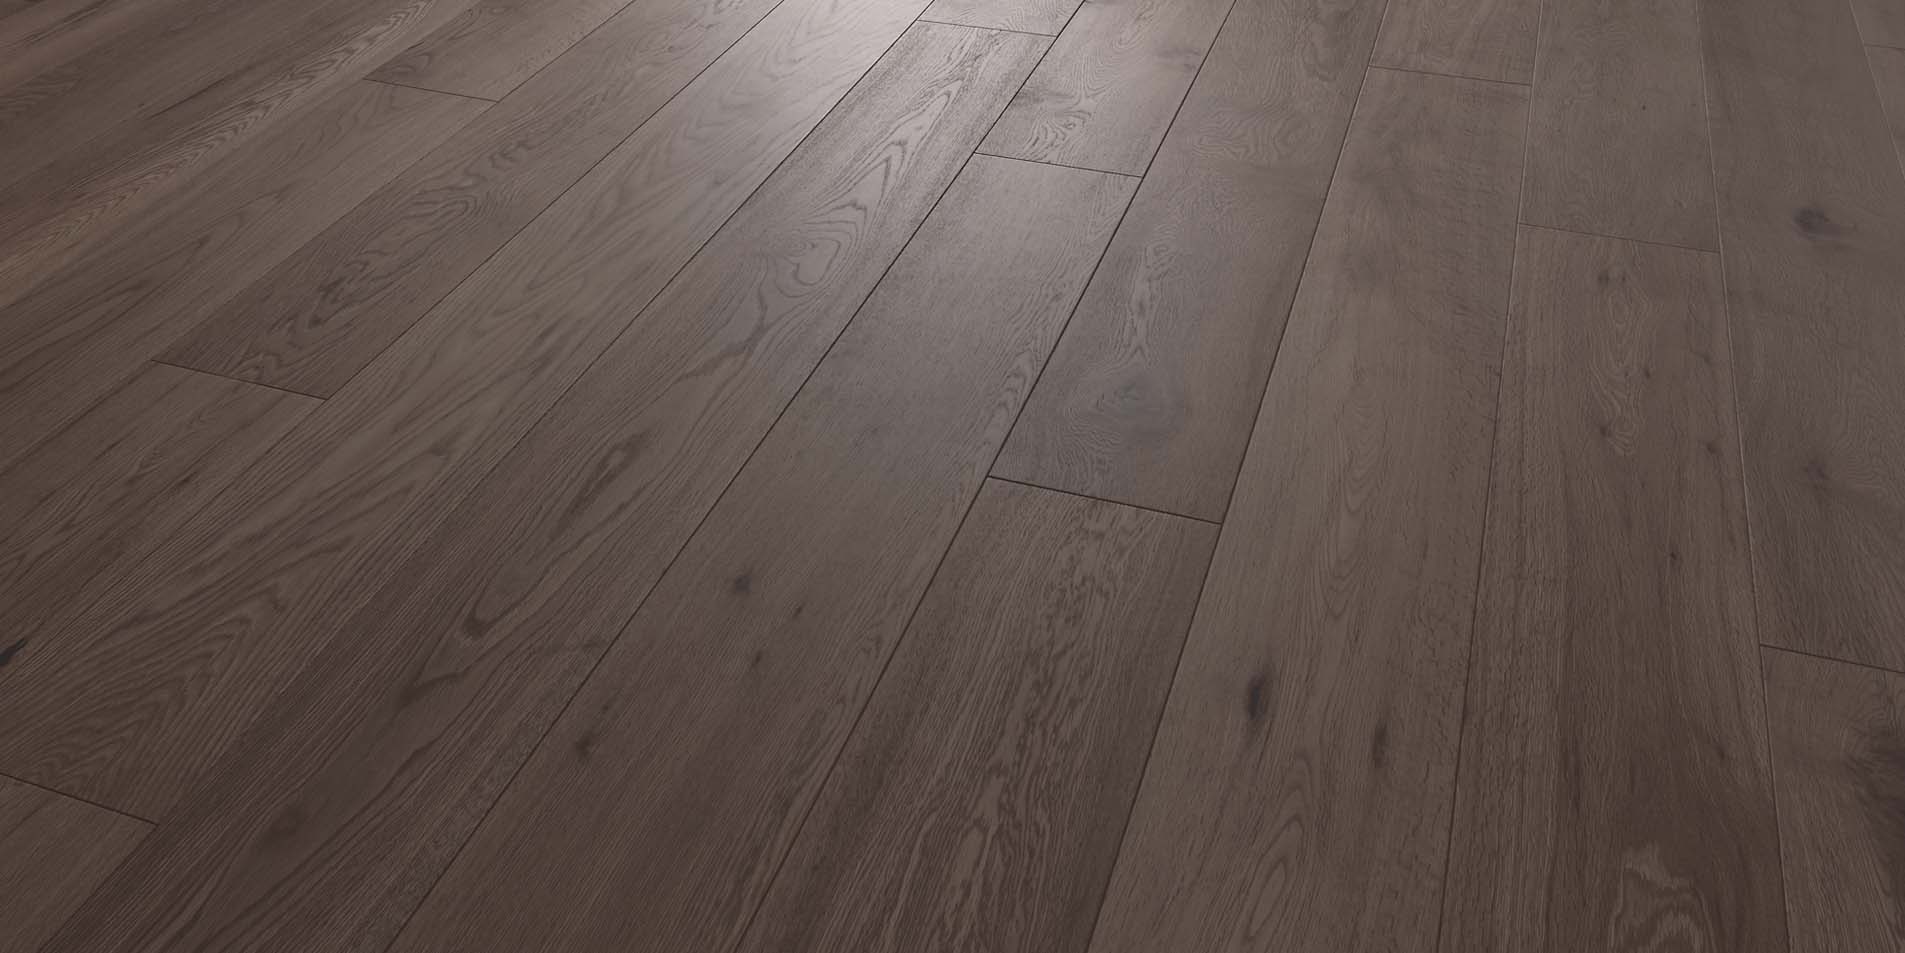 darkwood floor